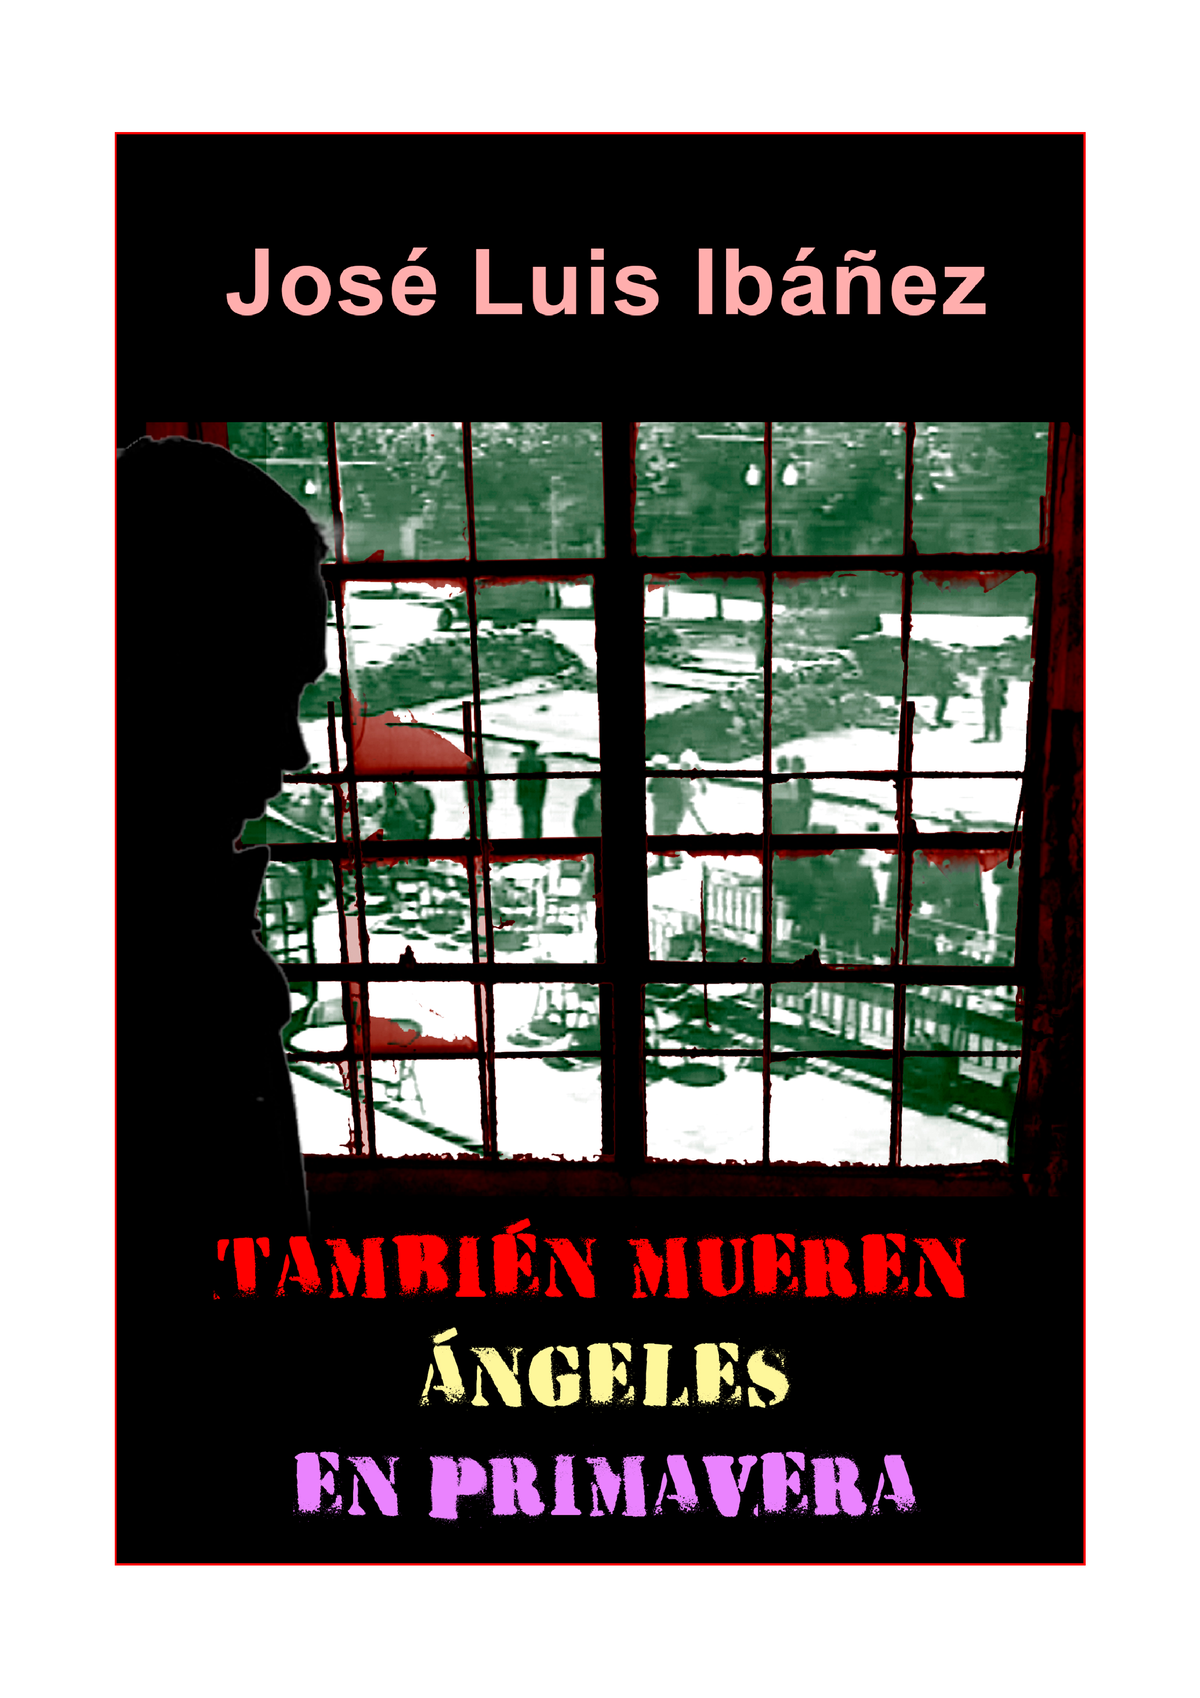 Jose Luis Ibañez Tambien Mueren Angeles En Primavera Barcelona Primavera De 1937 El 1393